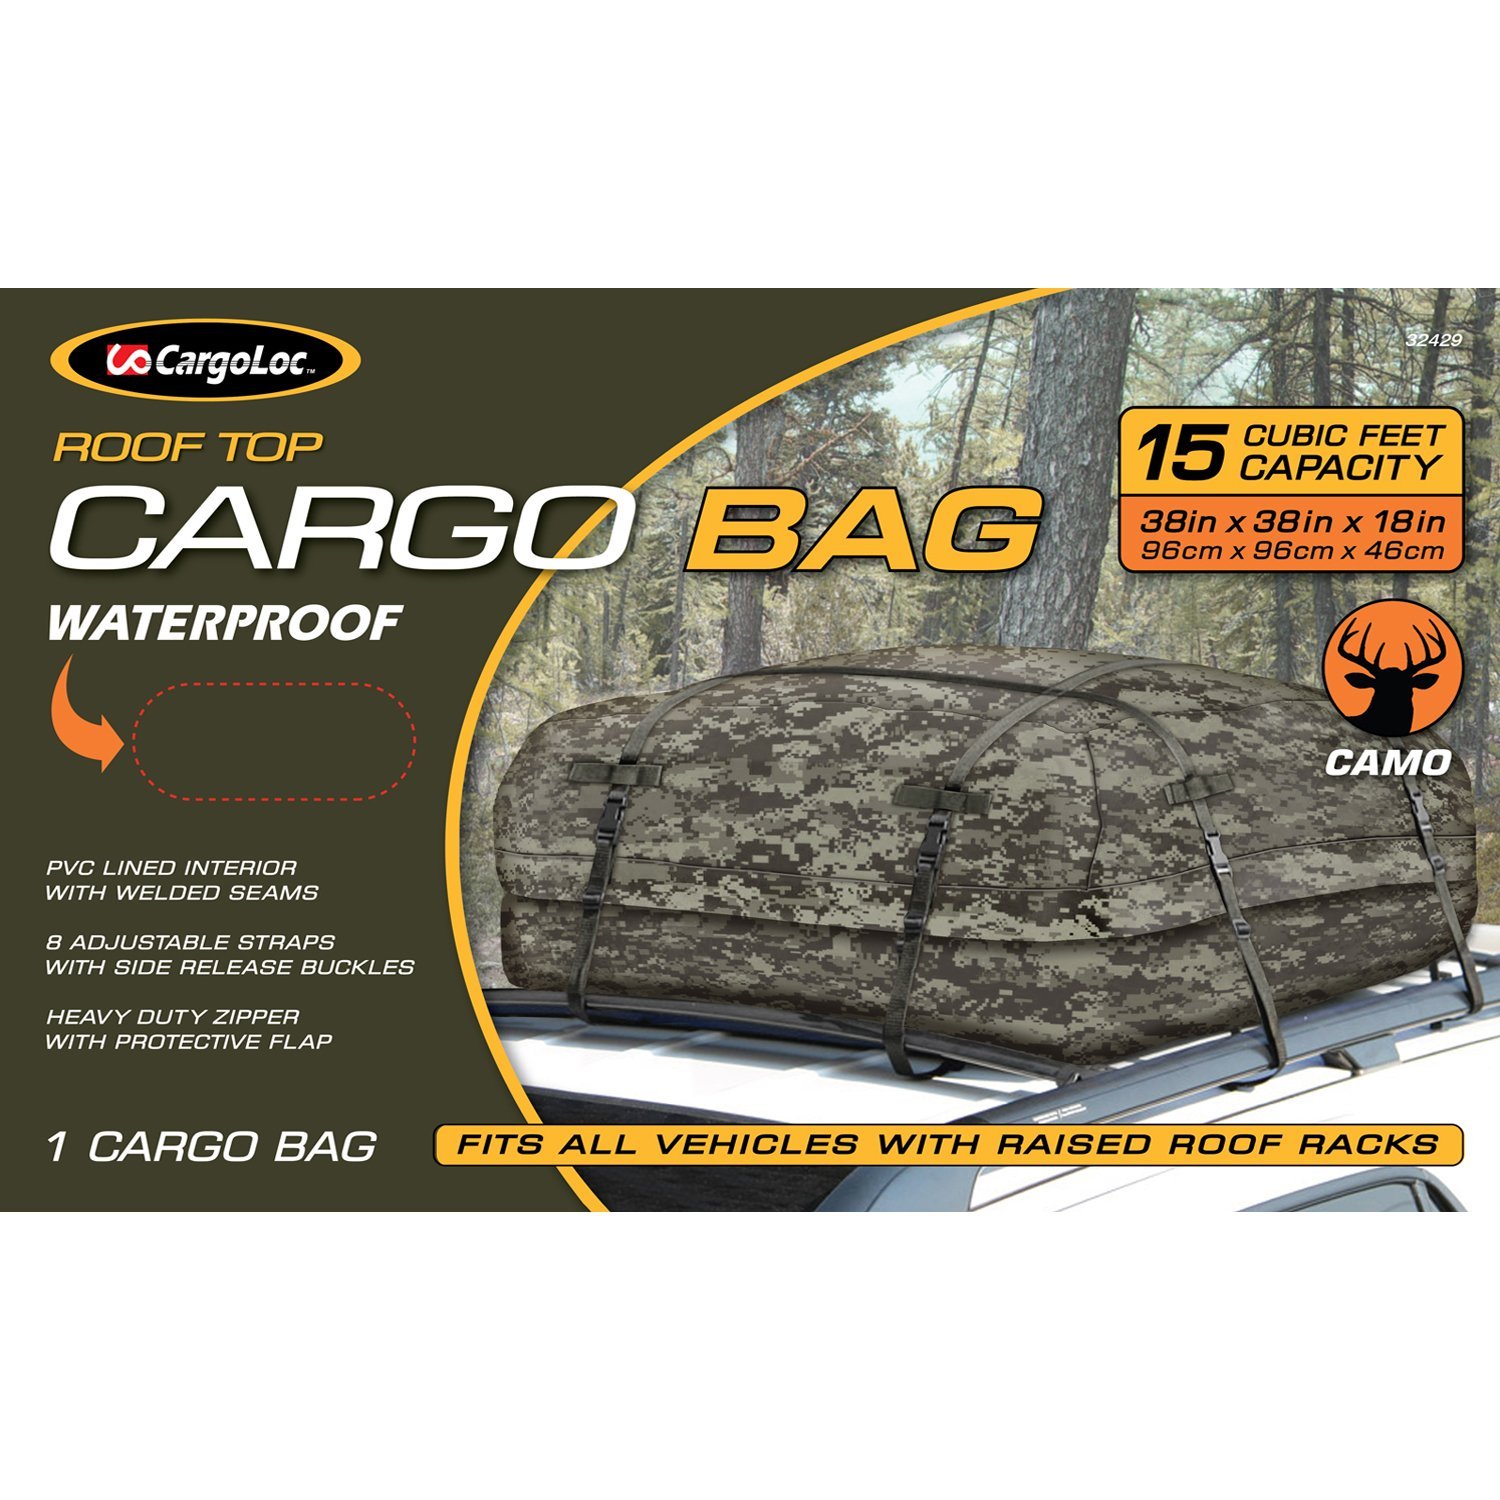 アメリカ USA US 工具 道具 CARGOLOC カーゴロックデラックスルーフ防水カバーデジタルカモPVC型番 32429サイズ 96x96x46cm※cargoloc社のルーフバスケット以外に使用する場合はサイズが合わない場合もあります。